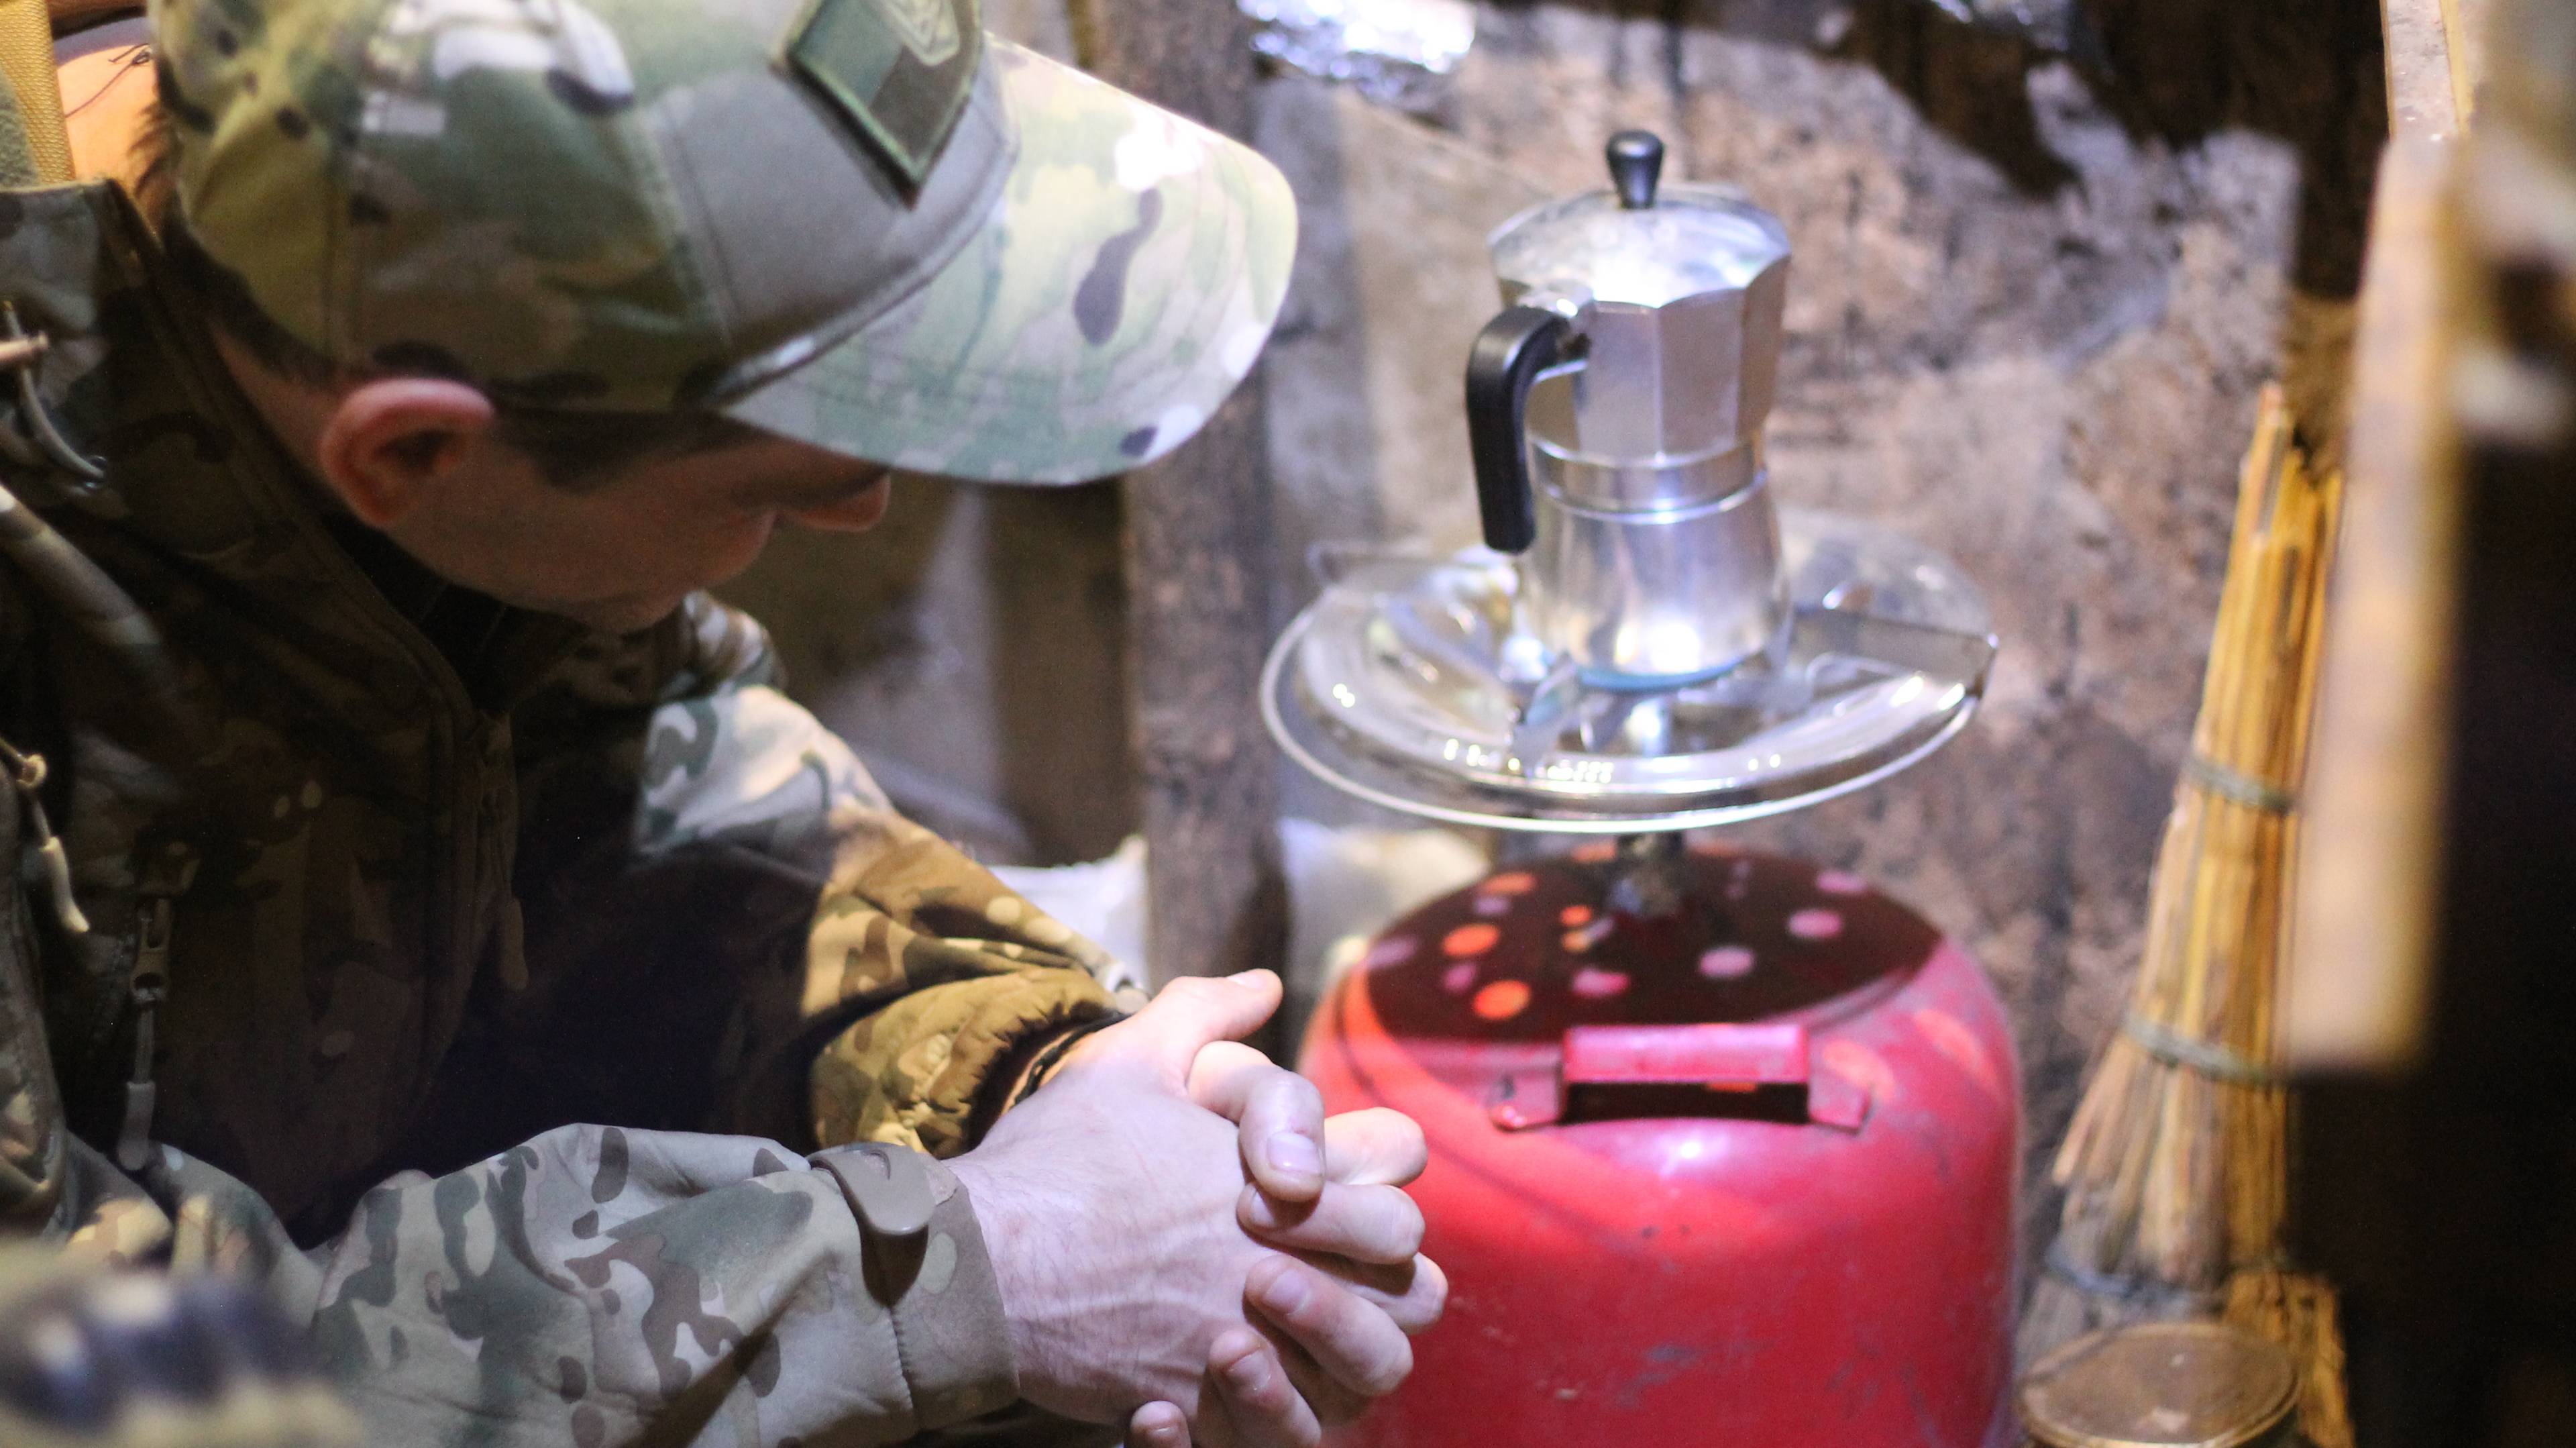 Ziemianka. Żołnierz pilnuje kawiarki, którą postawił na palniku butli gazowej.